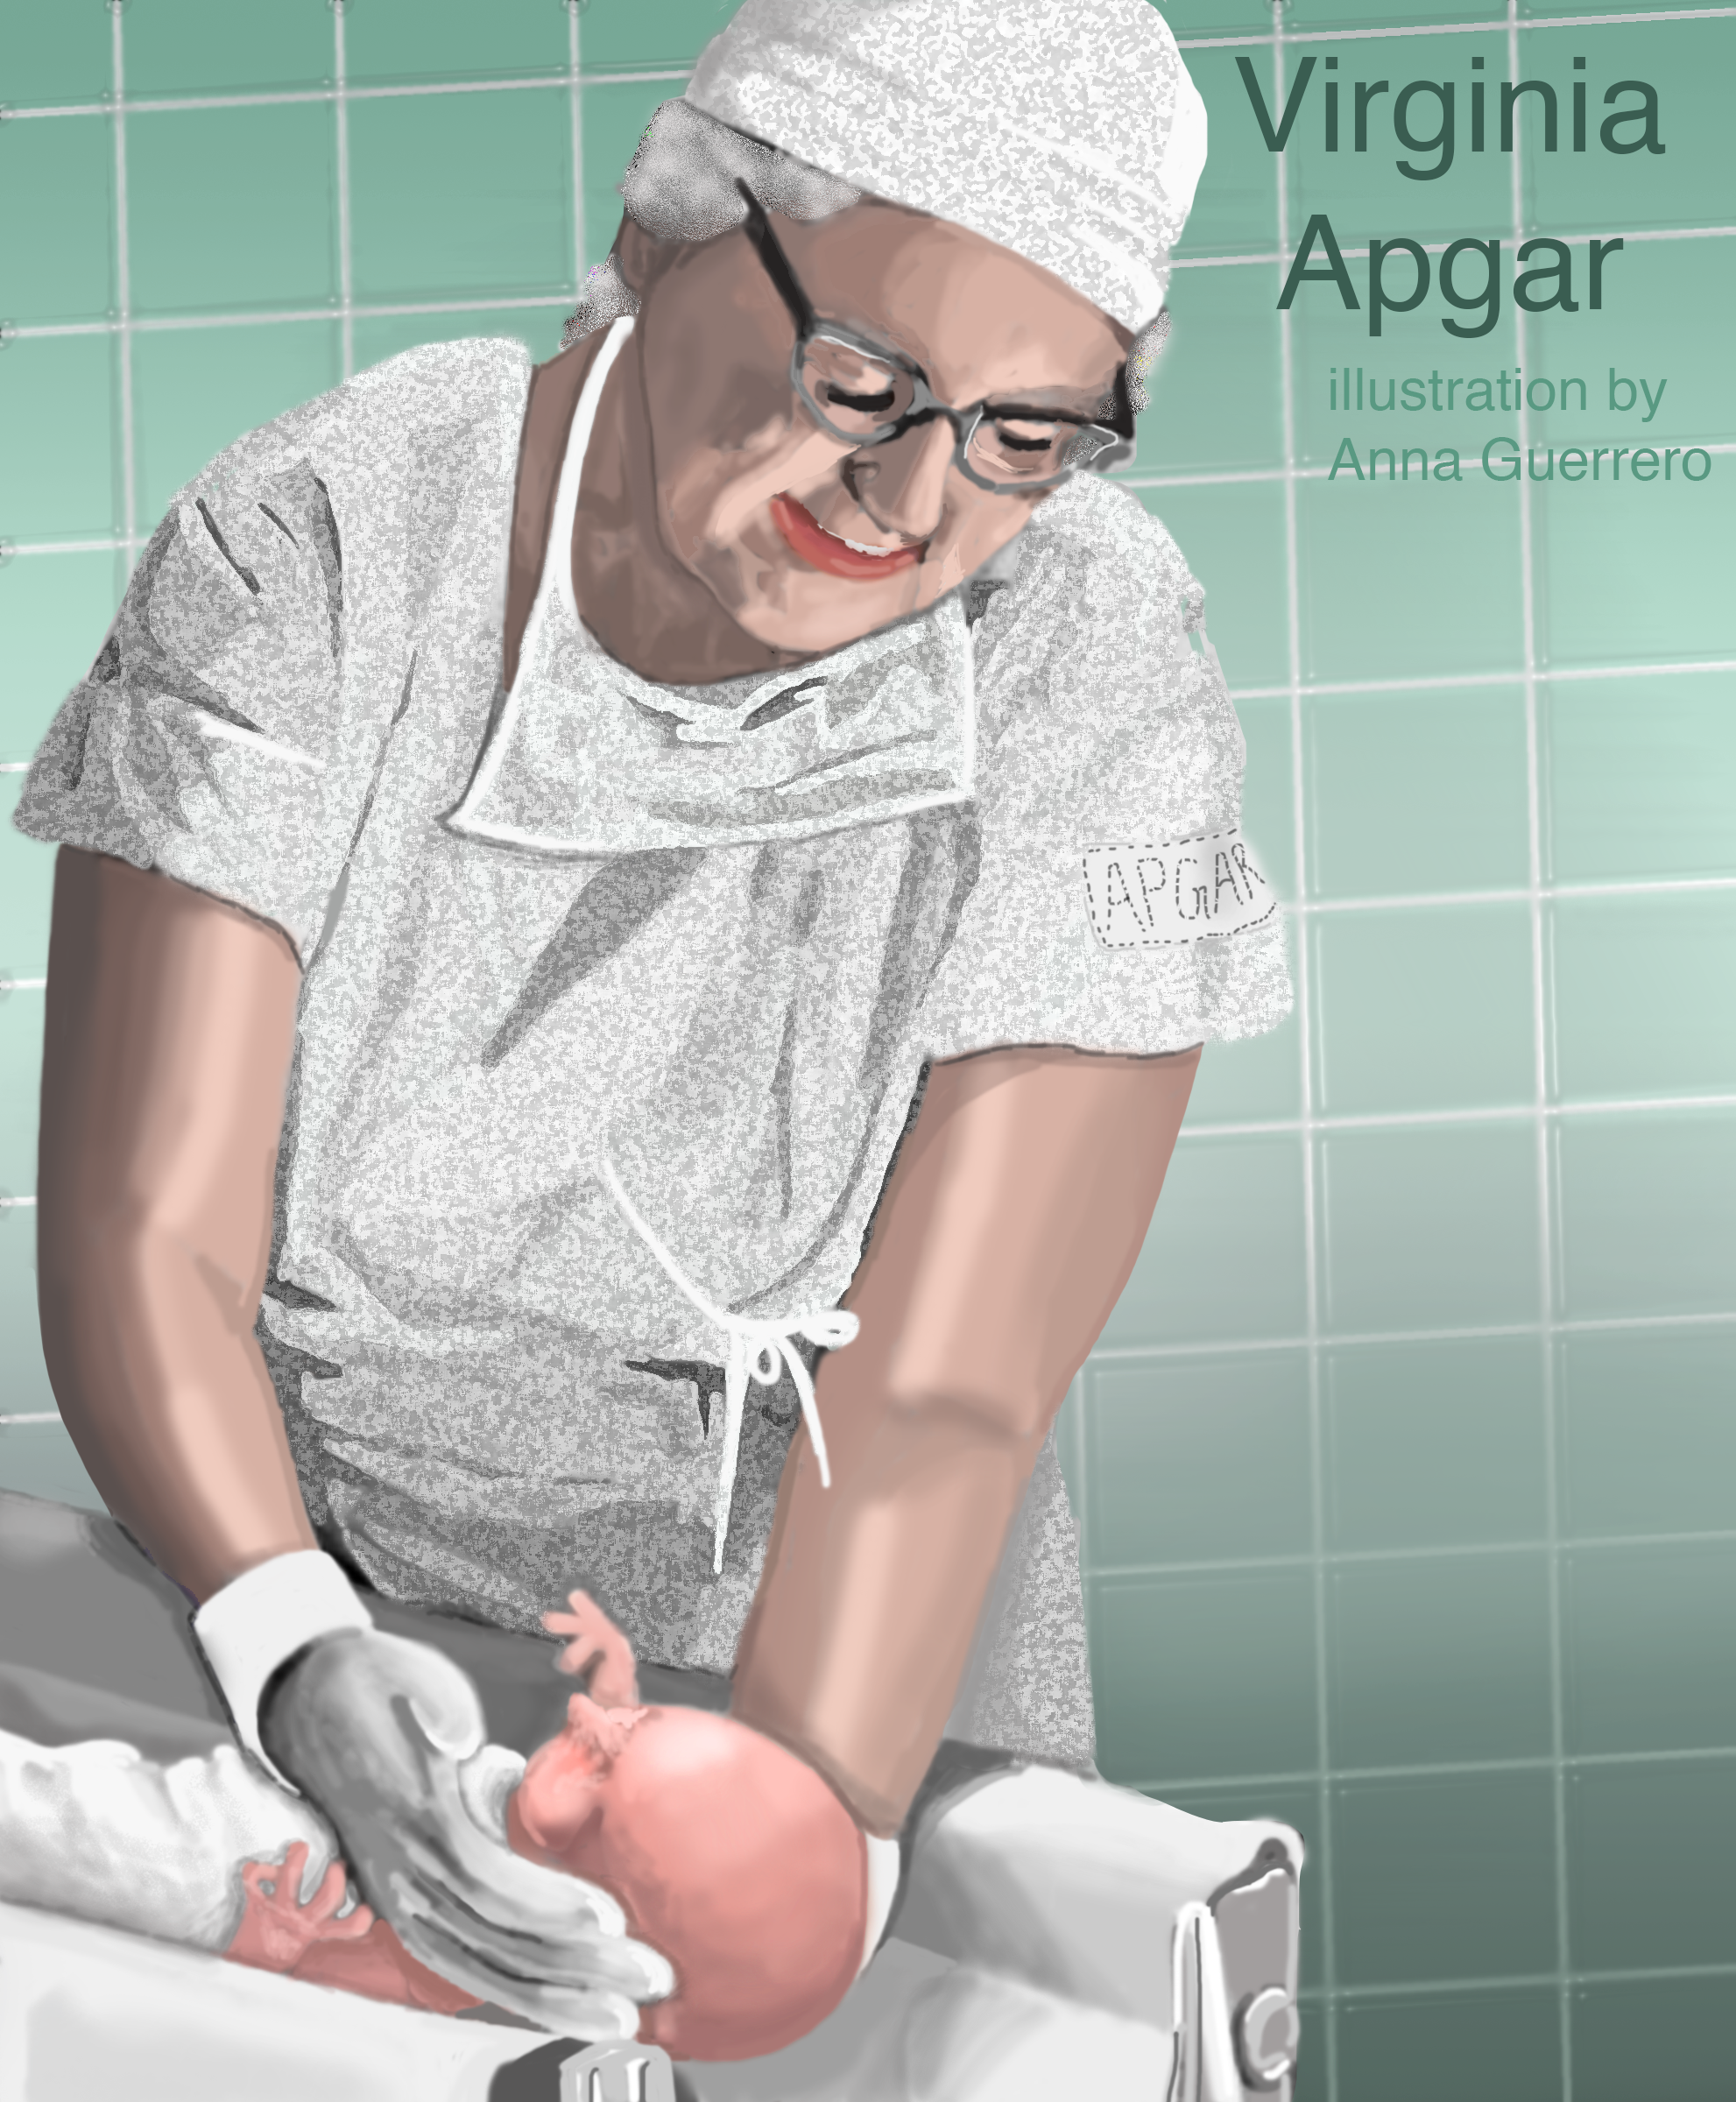 An illustration of Virginia Apgar